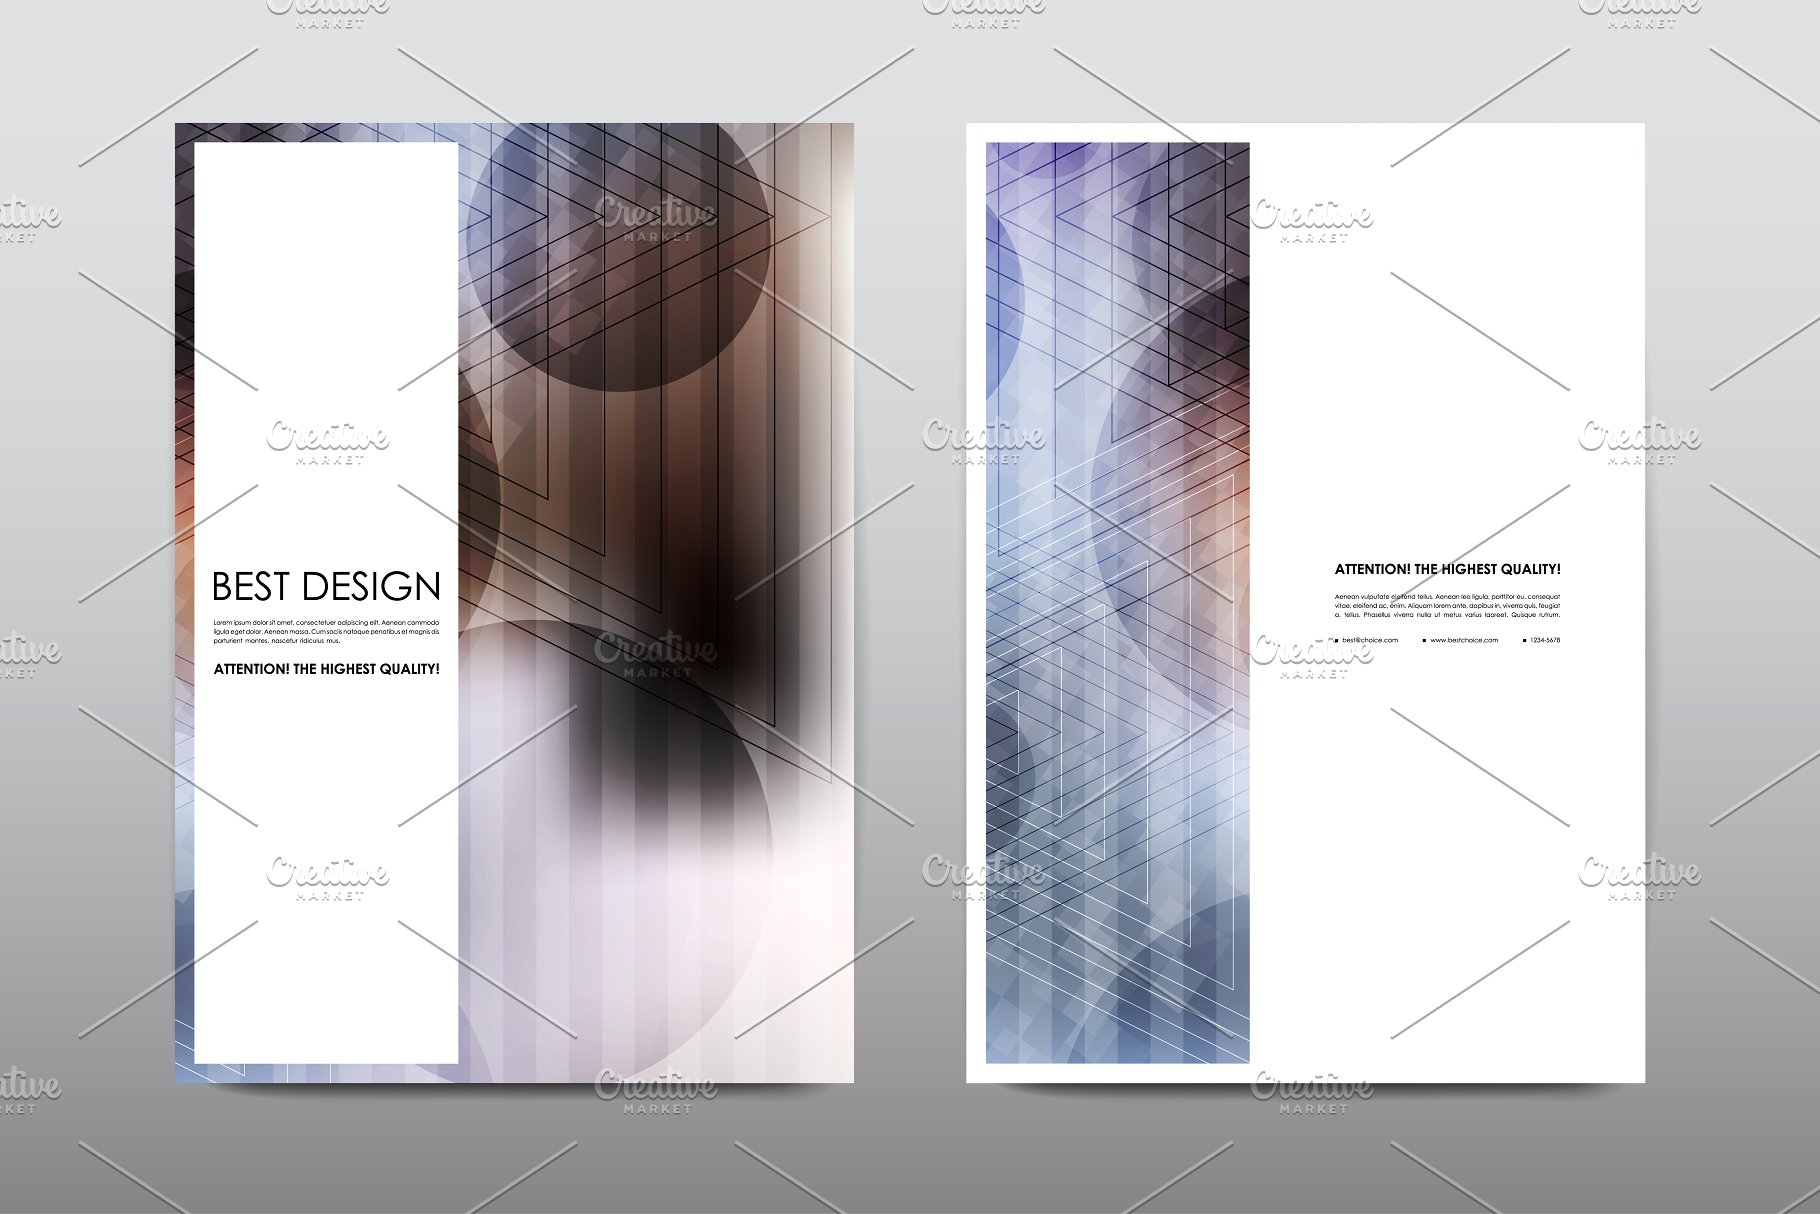 50+商业企业宣传小册子模板 50+ Business Brochures Bundle插图(51)